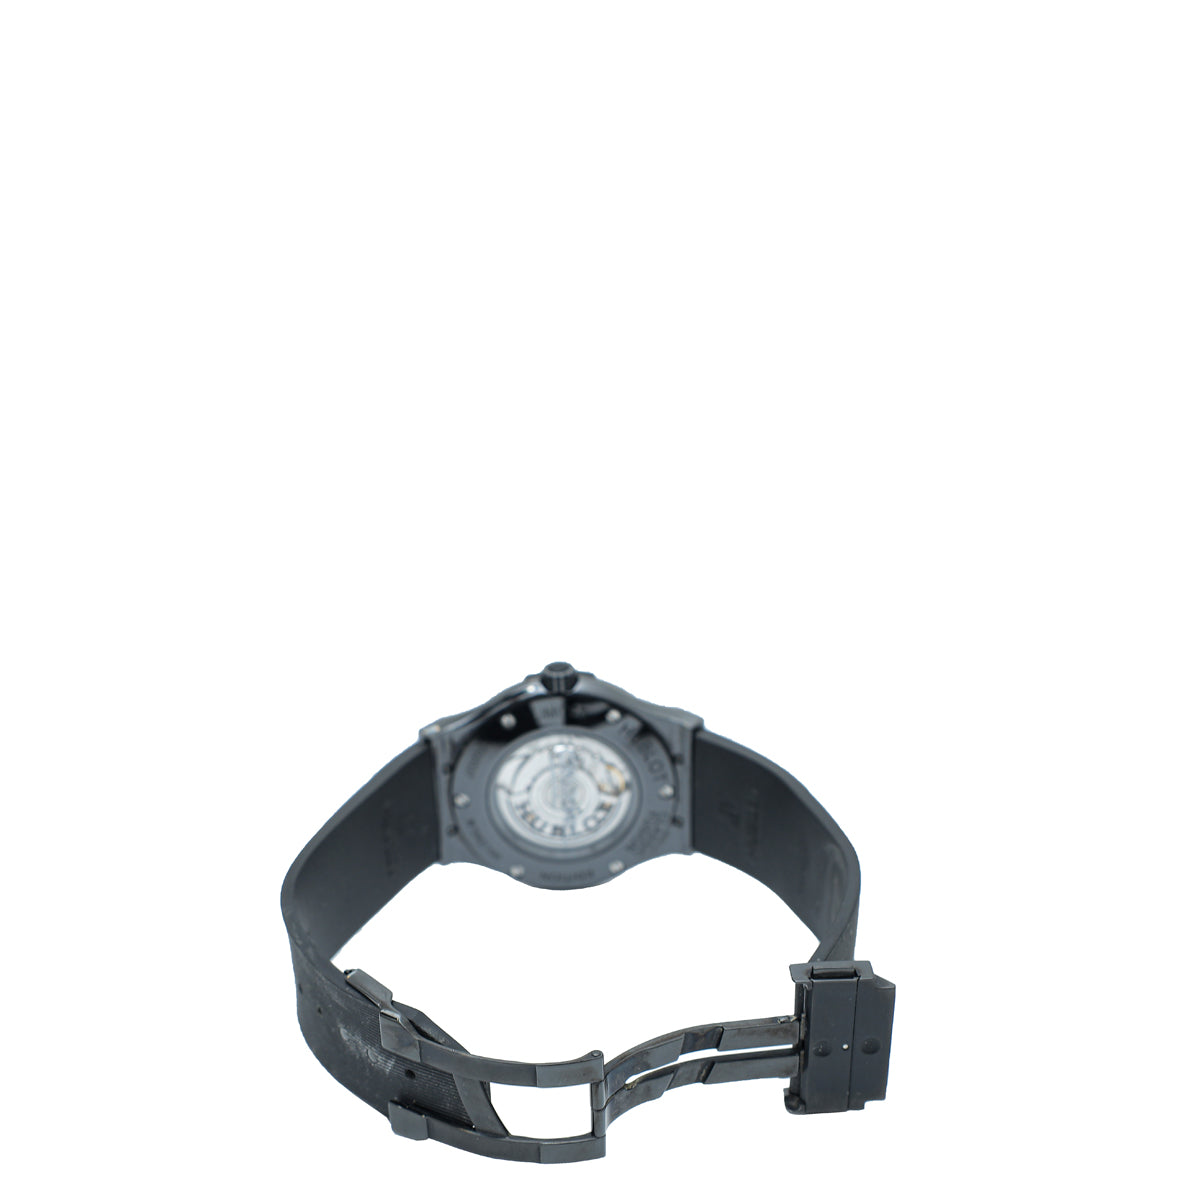 Hublot Black Ltd.Ed. Classic Fusion Cruz-Diez 45mm Watch